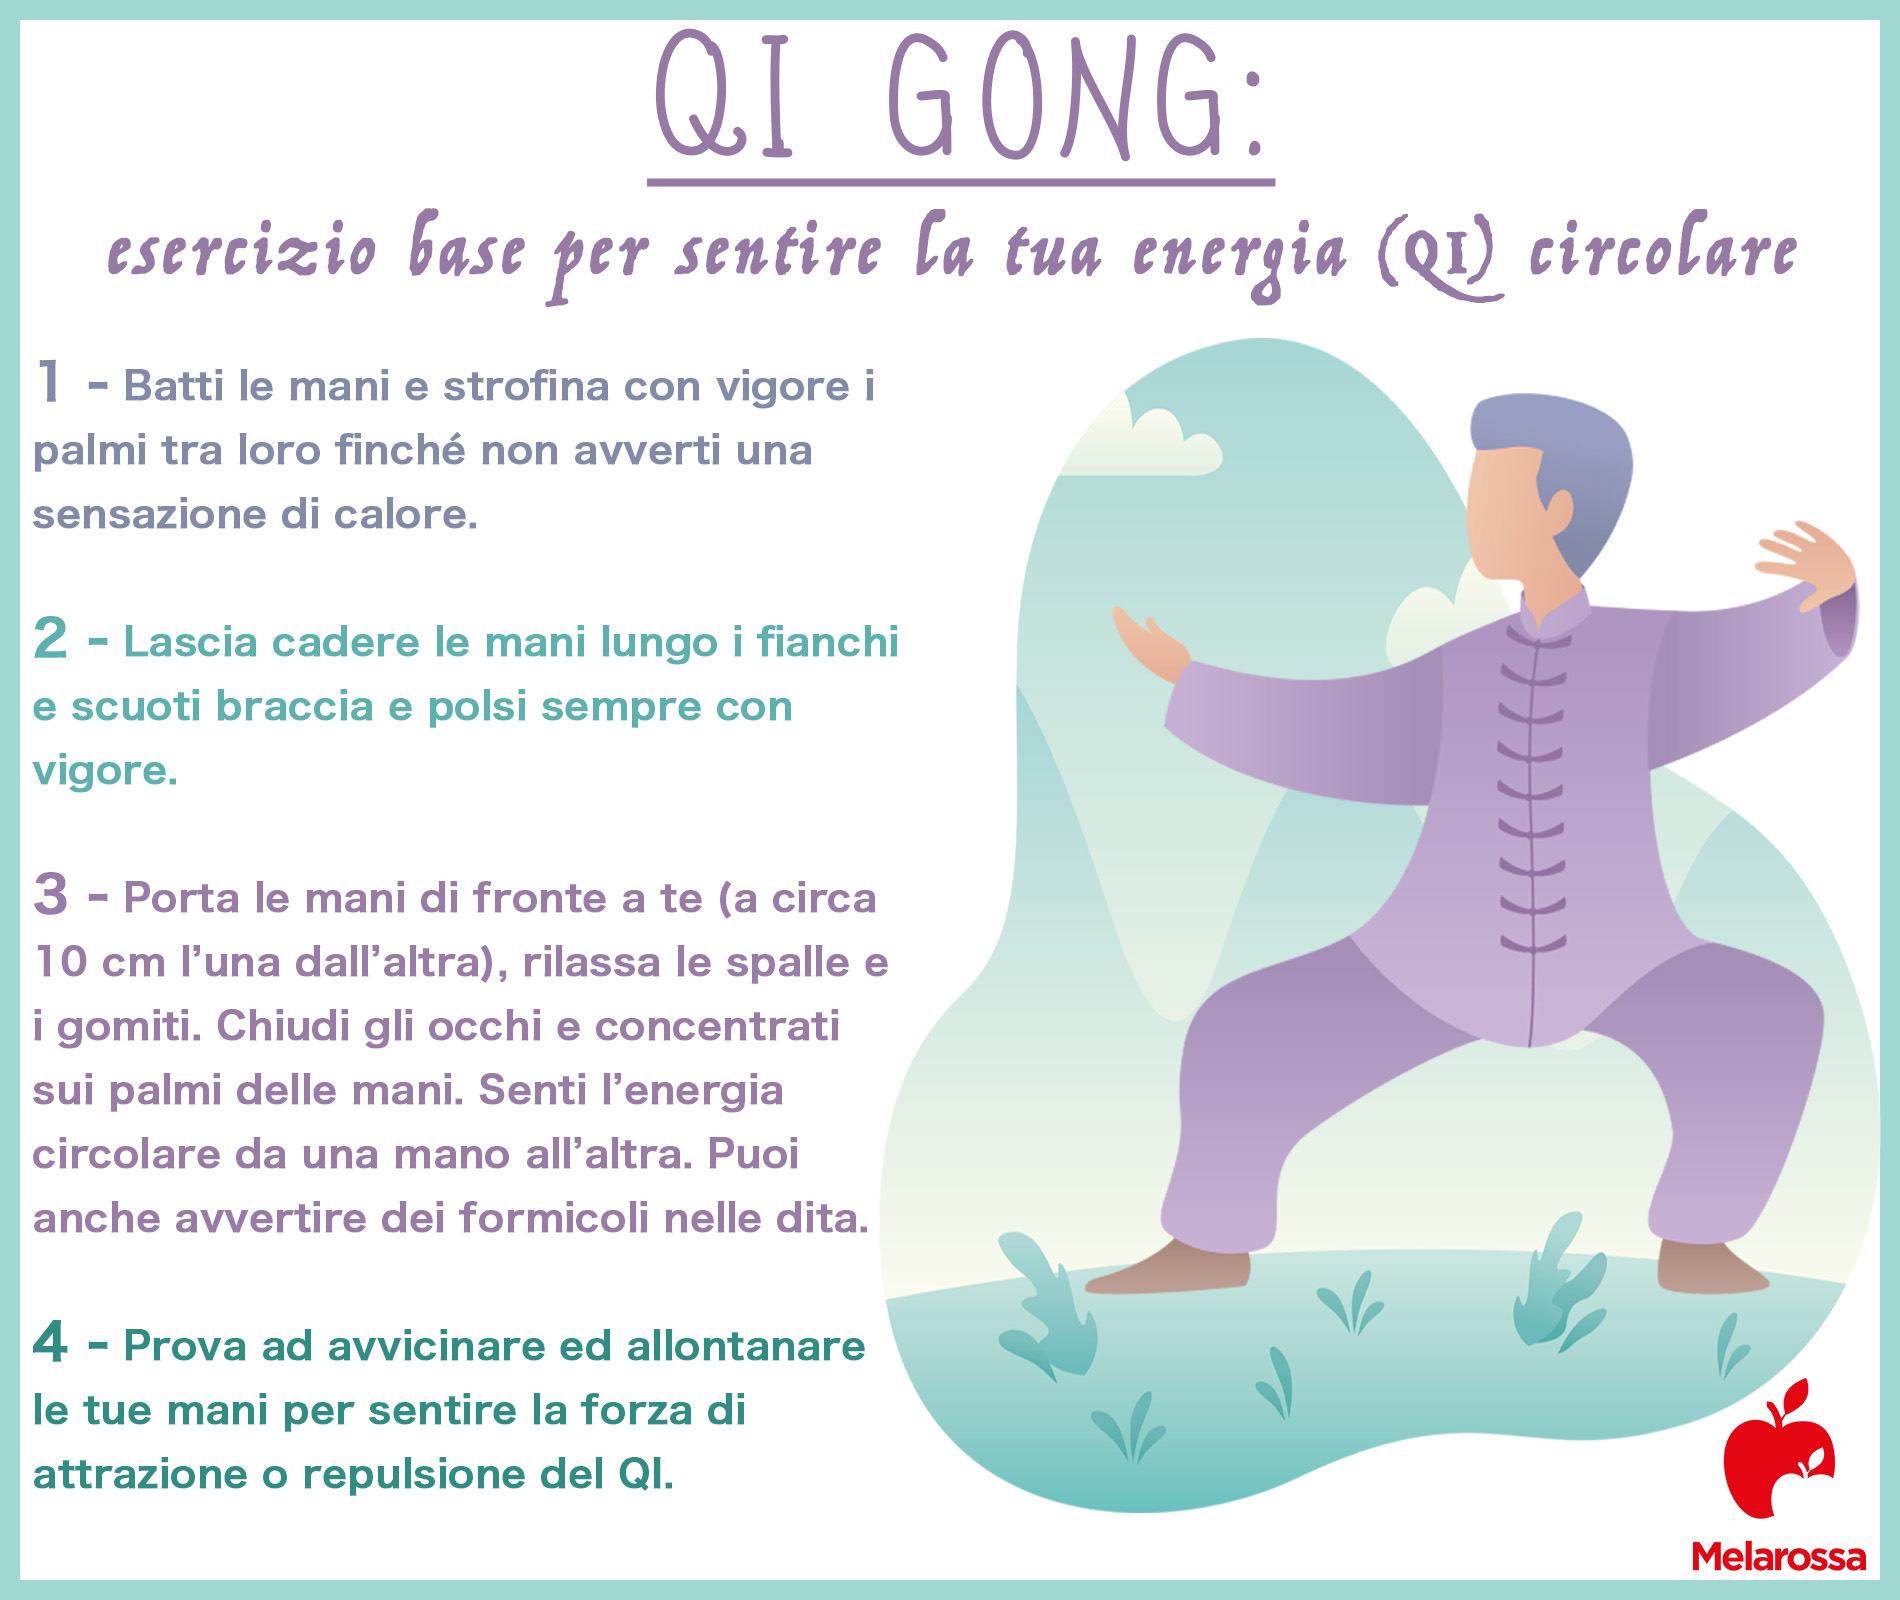 qi gong: esercizio base per sentire l'energia circolare